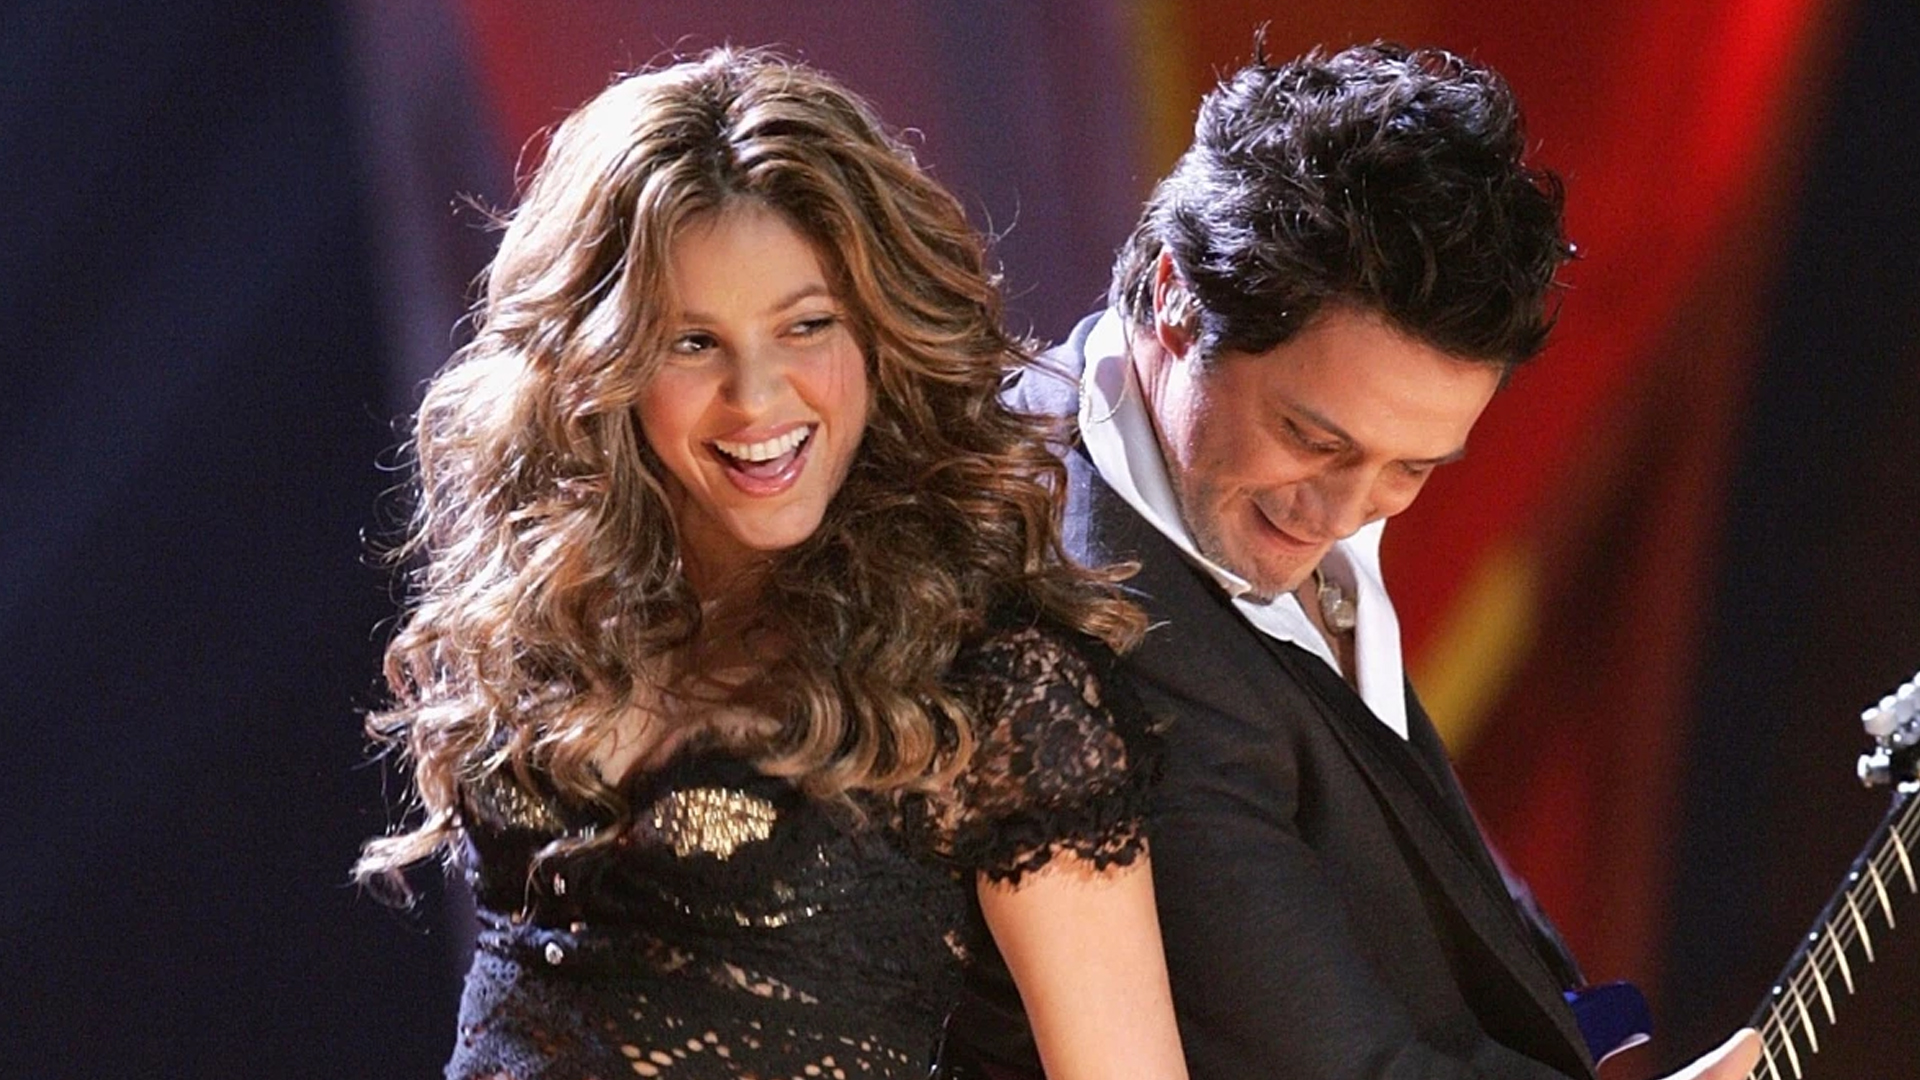 Shakira y Alejandro Sanz juntos en el escenario durante un concierto en el año 2008